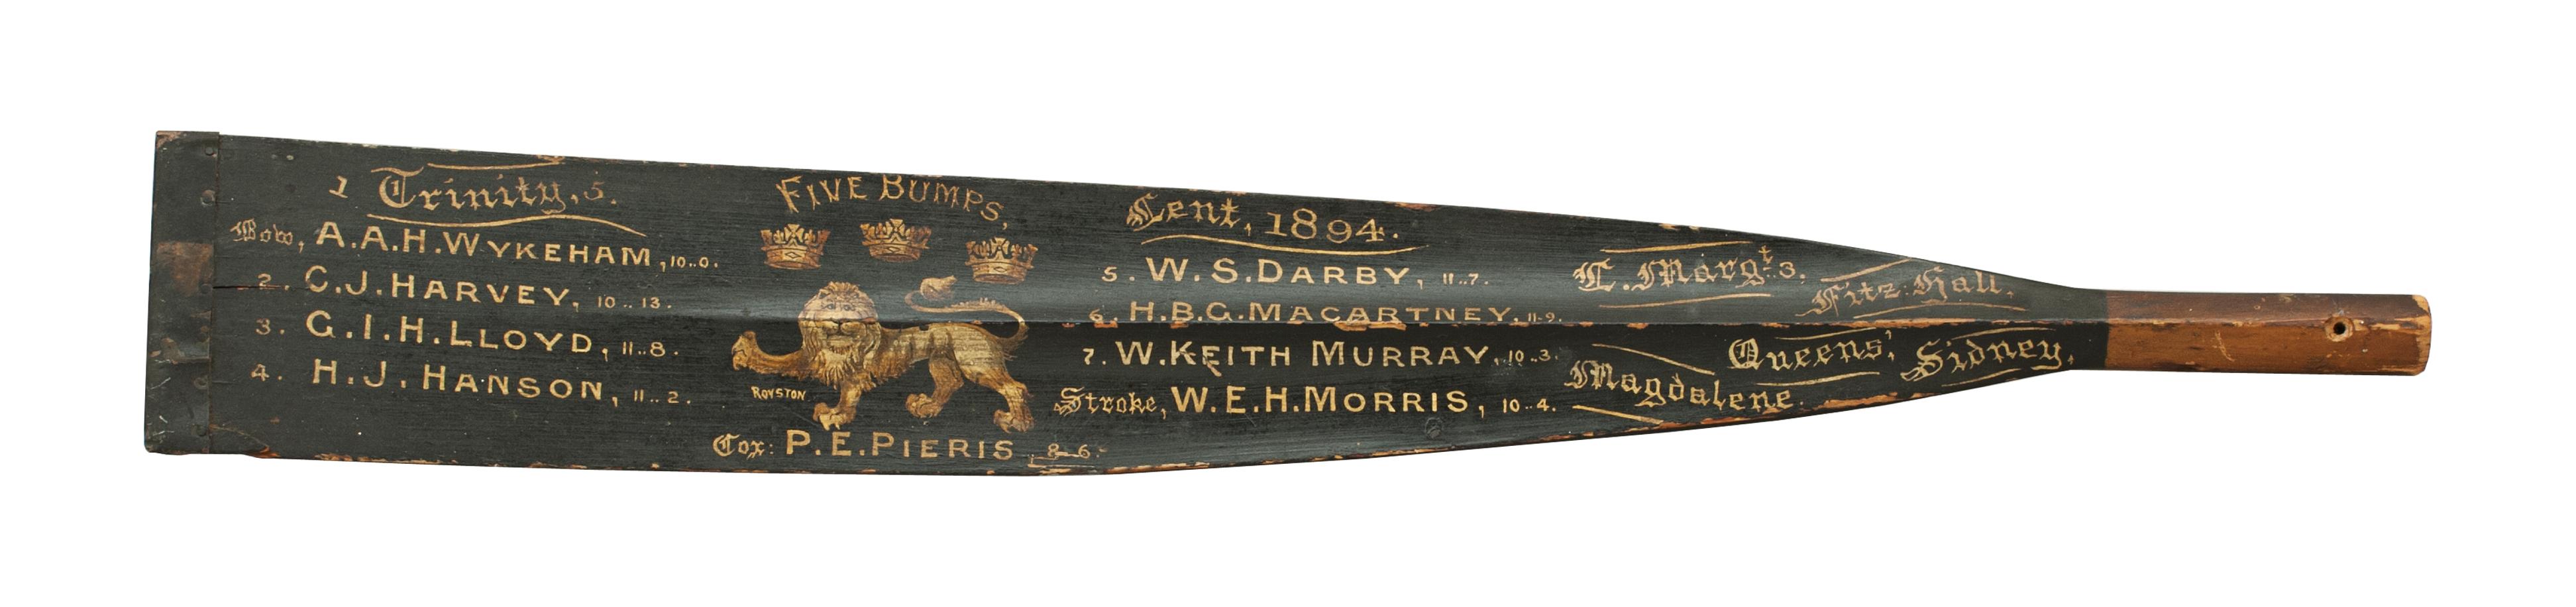 antique rowing oars